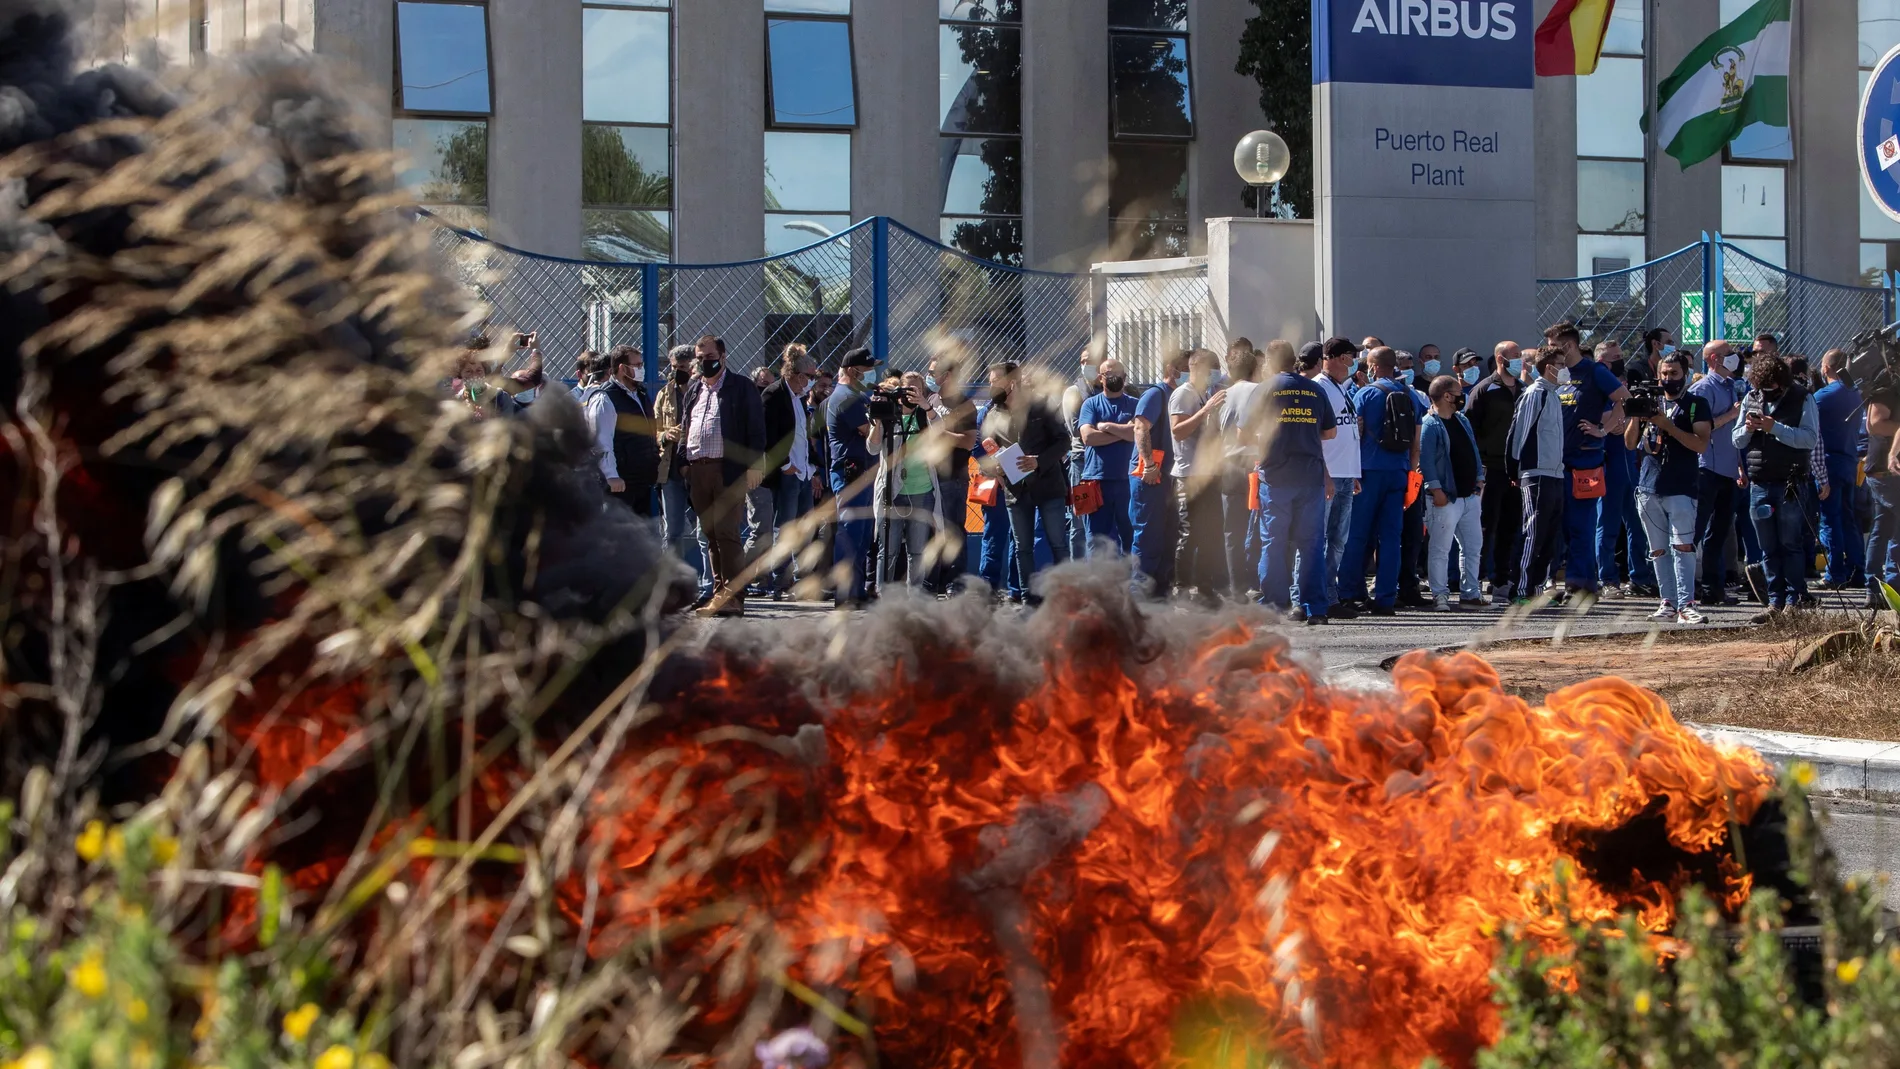 La plantilla de Airbus Puerto Real (Cádiz) se ha concentrado, de nuevo, esta mañana en la puerta de la factoría donde han sido informados por el comité de empresa de que la multinacional no ha planteado en su reunión de hoy el cierre